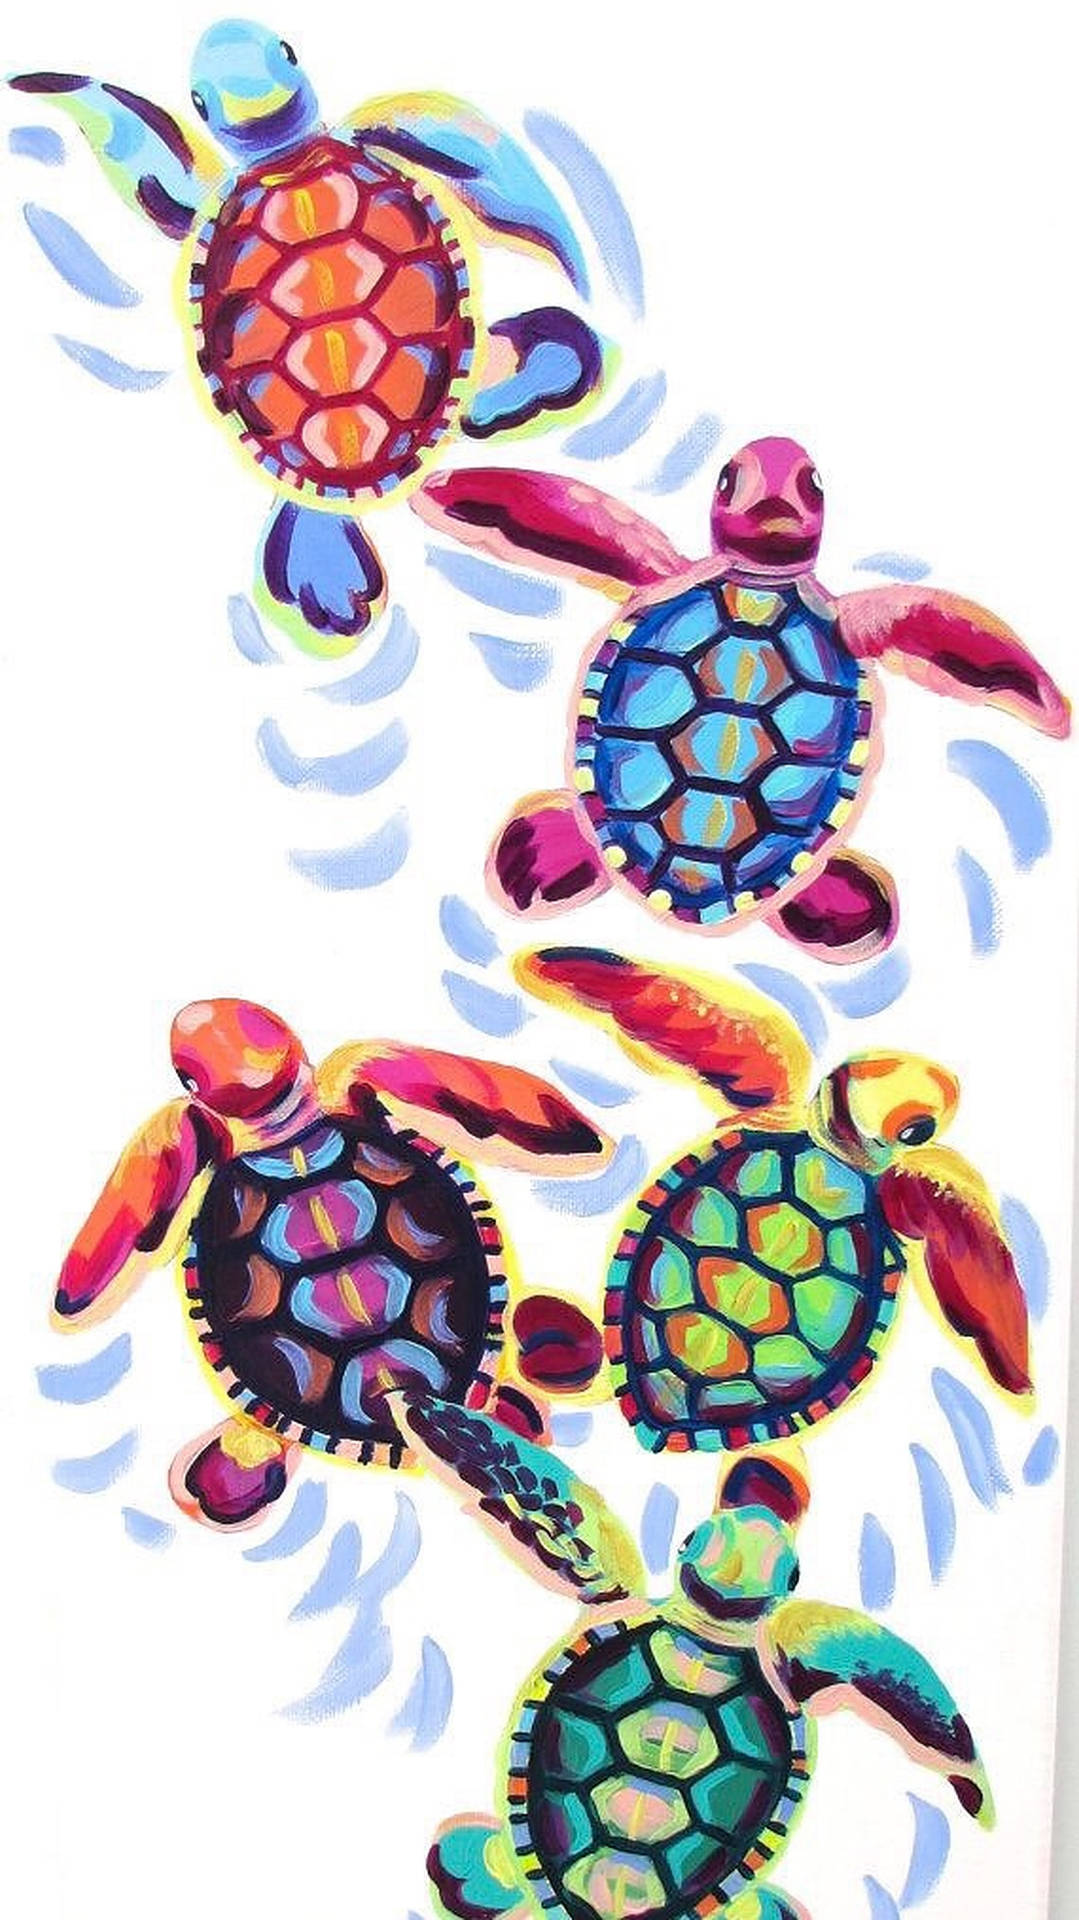 Femfärgglada Sköldpaddor. Wallpaper